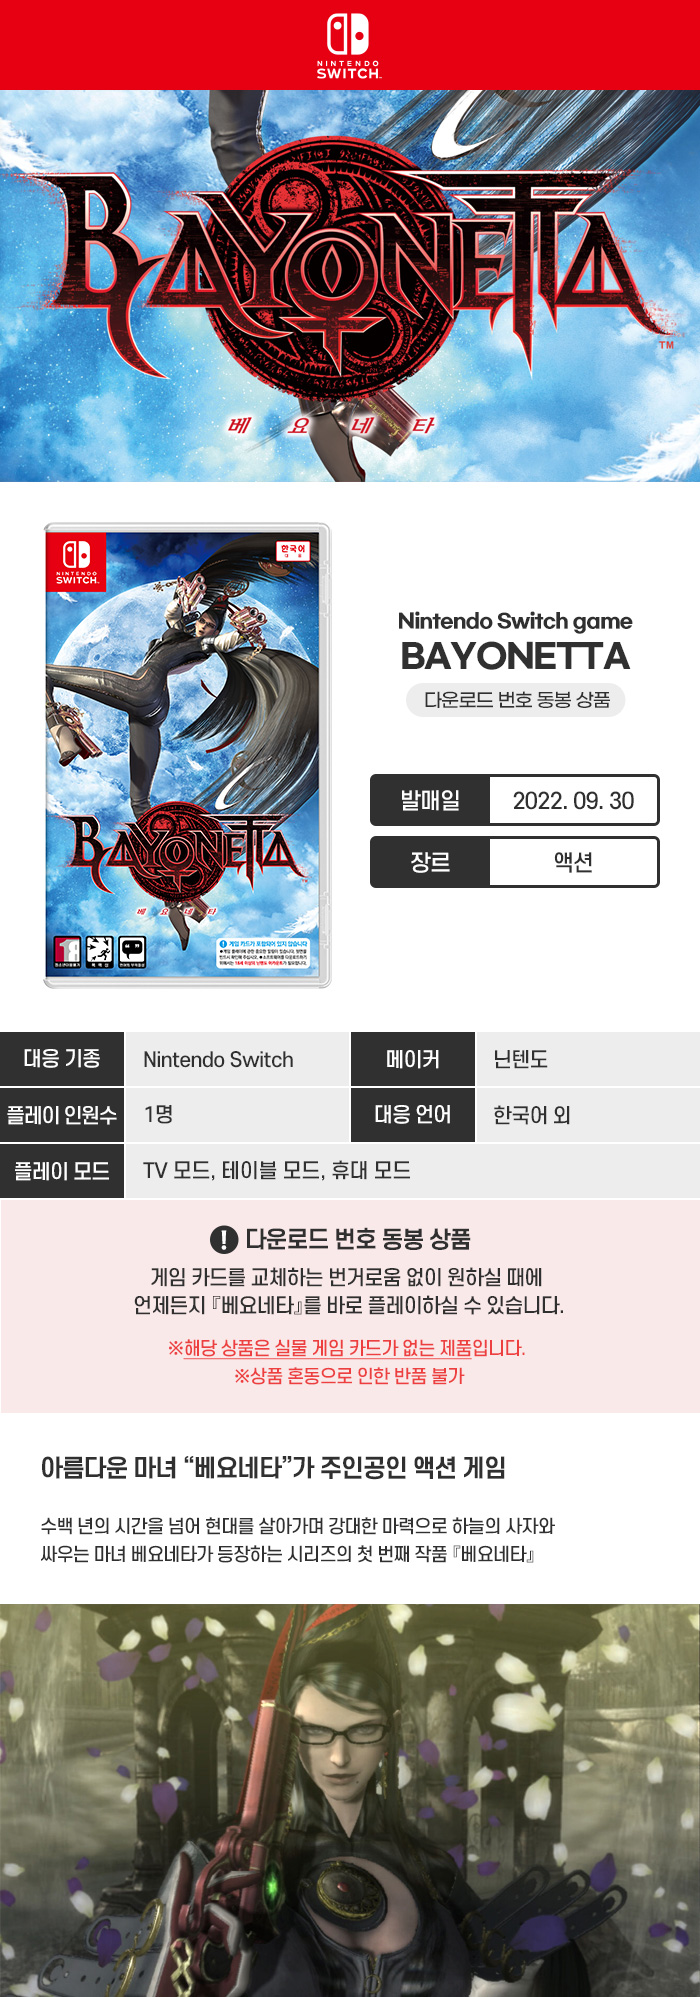 bayonetta1_700.jpg